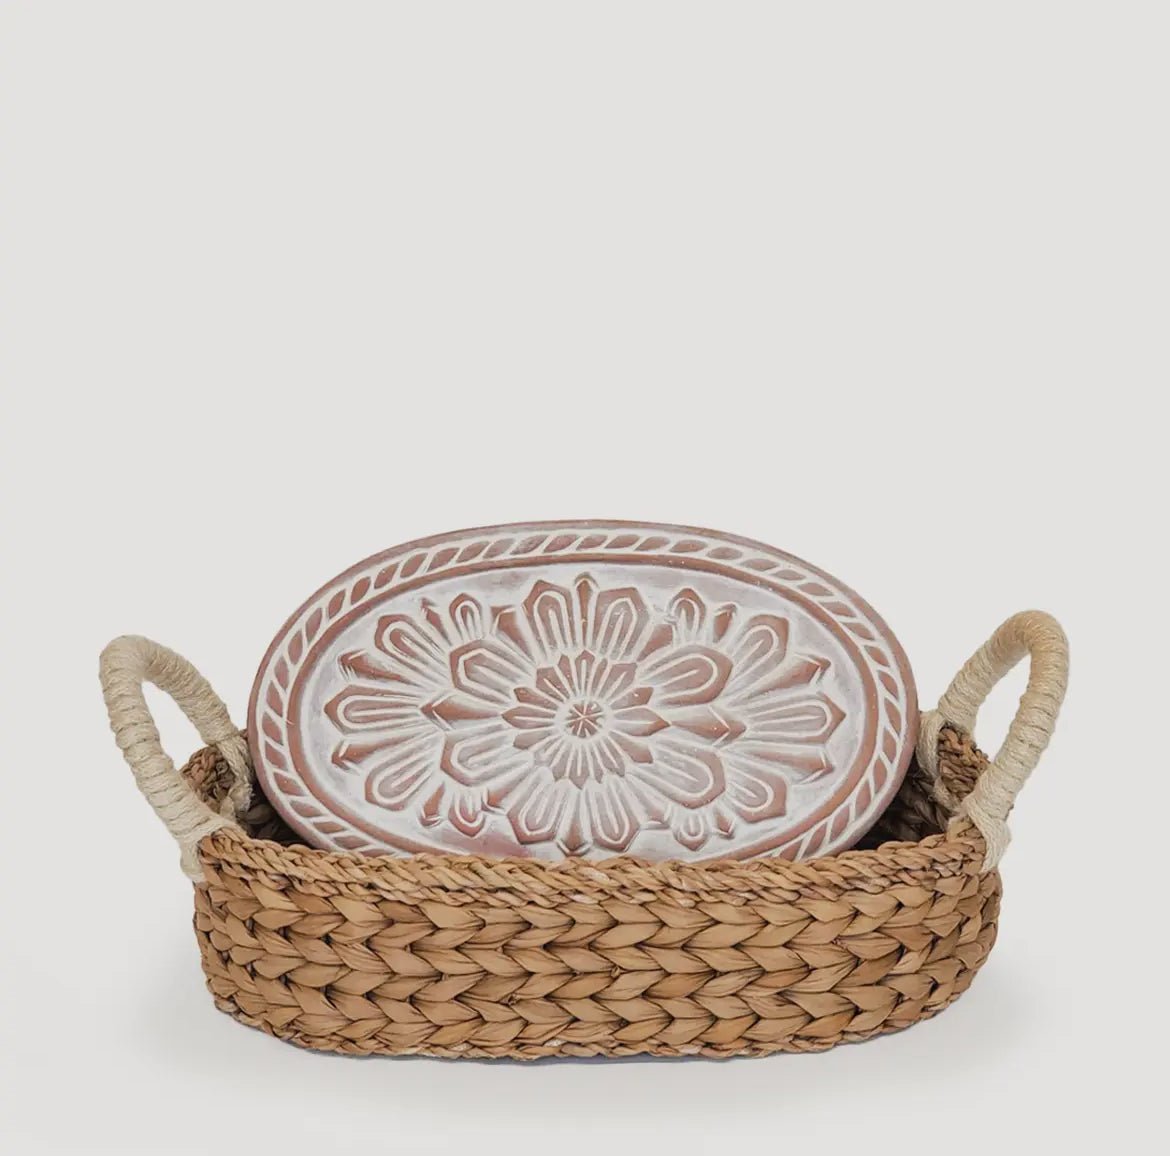 Handmade Bread Warmer & Wicker Basket - Vintage Flower Oval